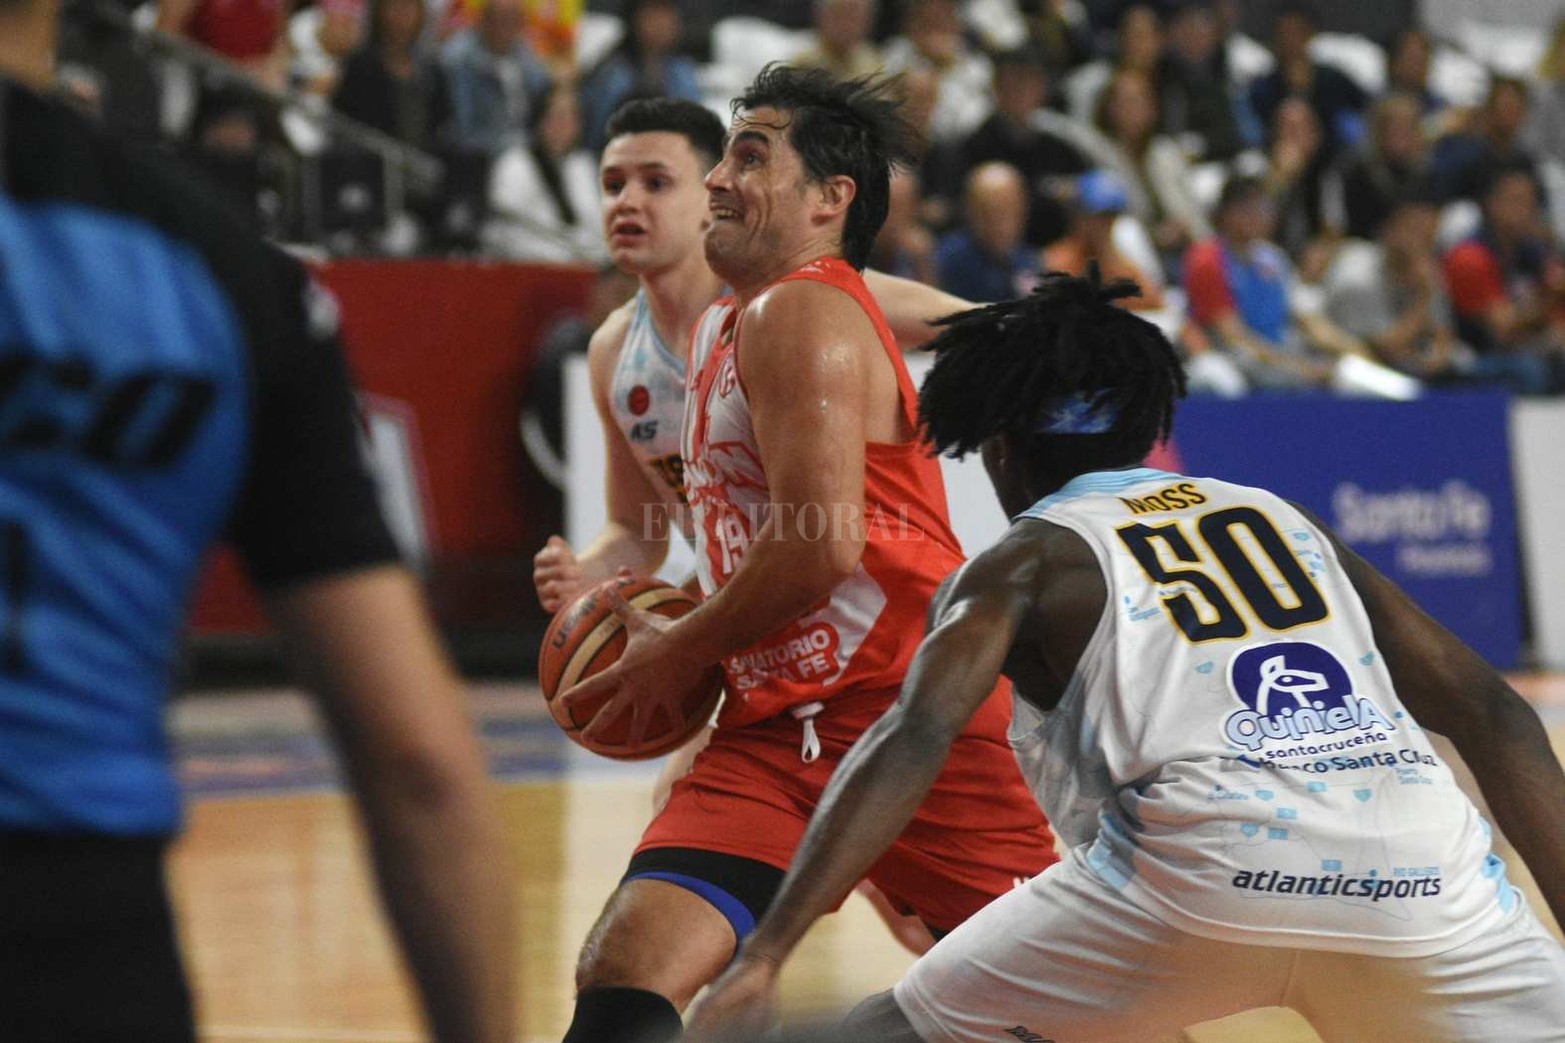 Liga Nacional de básquet. Unión ganó el quinto partido y se quedó con la serie 3 a 2. Derrotó a Hispano de Río Gallegos y mantuvo la categoría en la elite del básquet nacional.